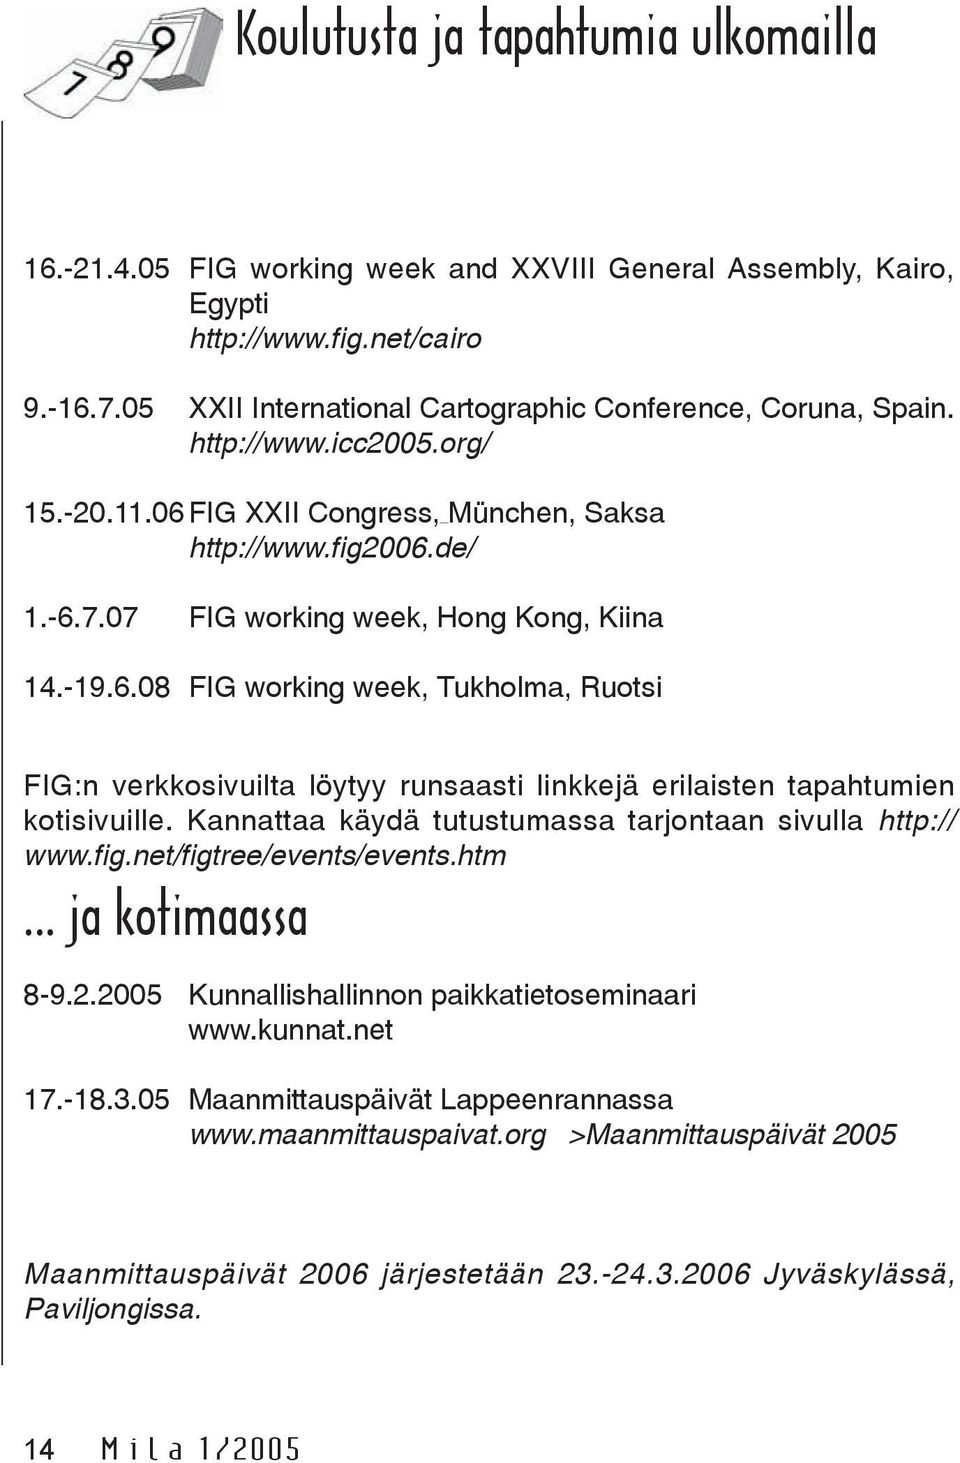 07 FIG working week, Hong Kong, Kiina 14.-19.6.08 FIG working week, Tukholma, Ruotsi FIG:n verkkosivuilta löytyy runsaasti linkkejä erilaisten tapahtumien kotisivuille.